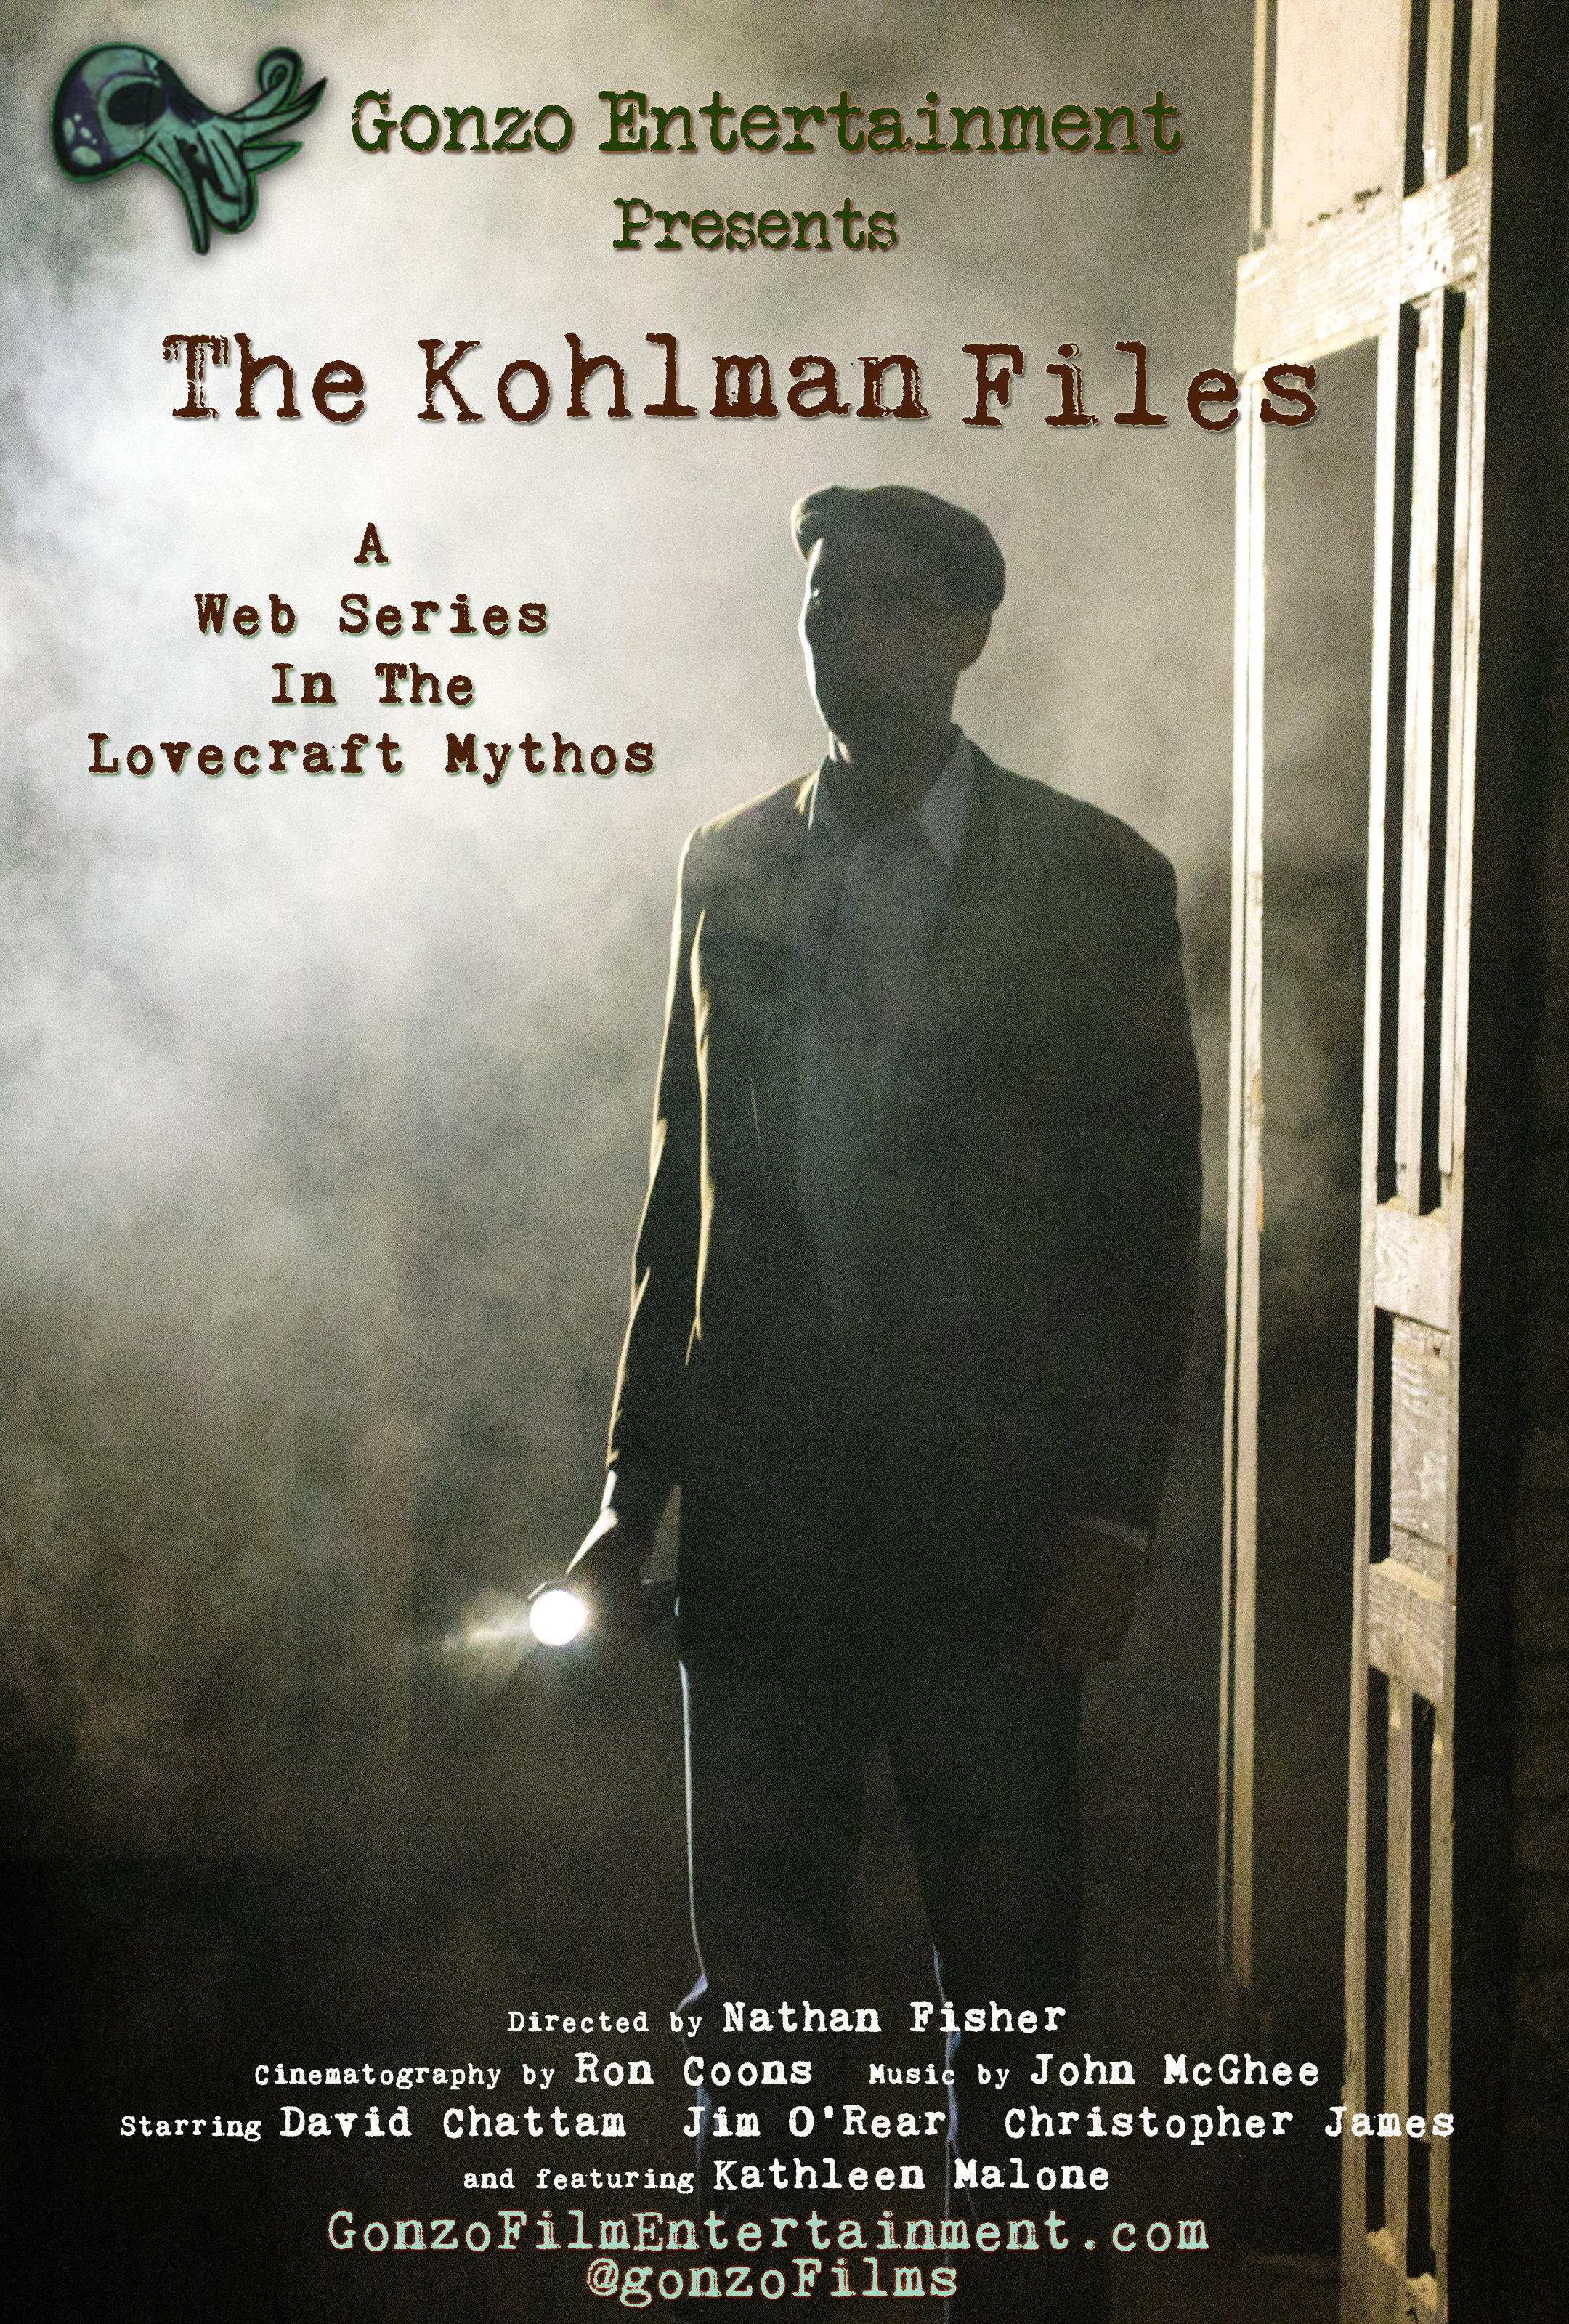 The Kohlman Files